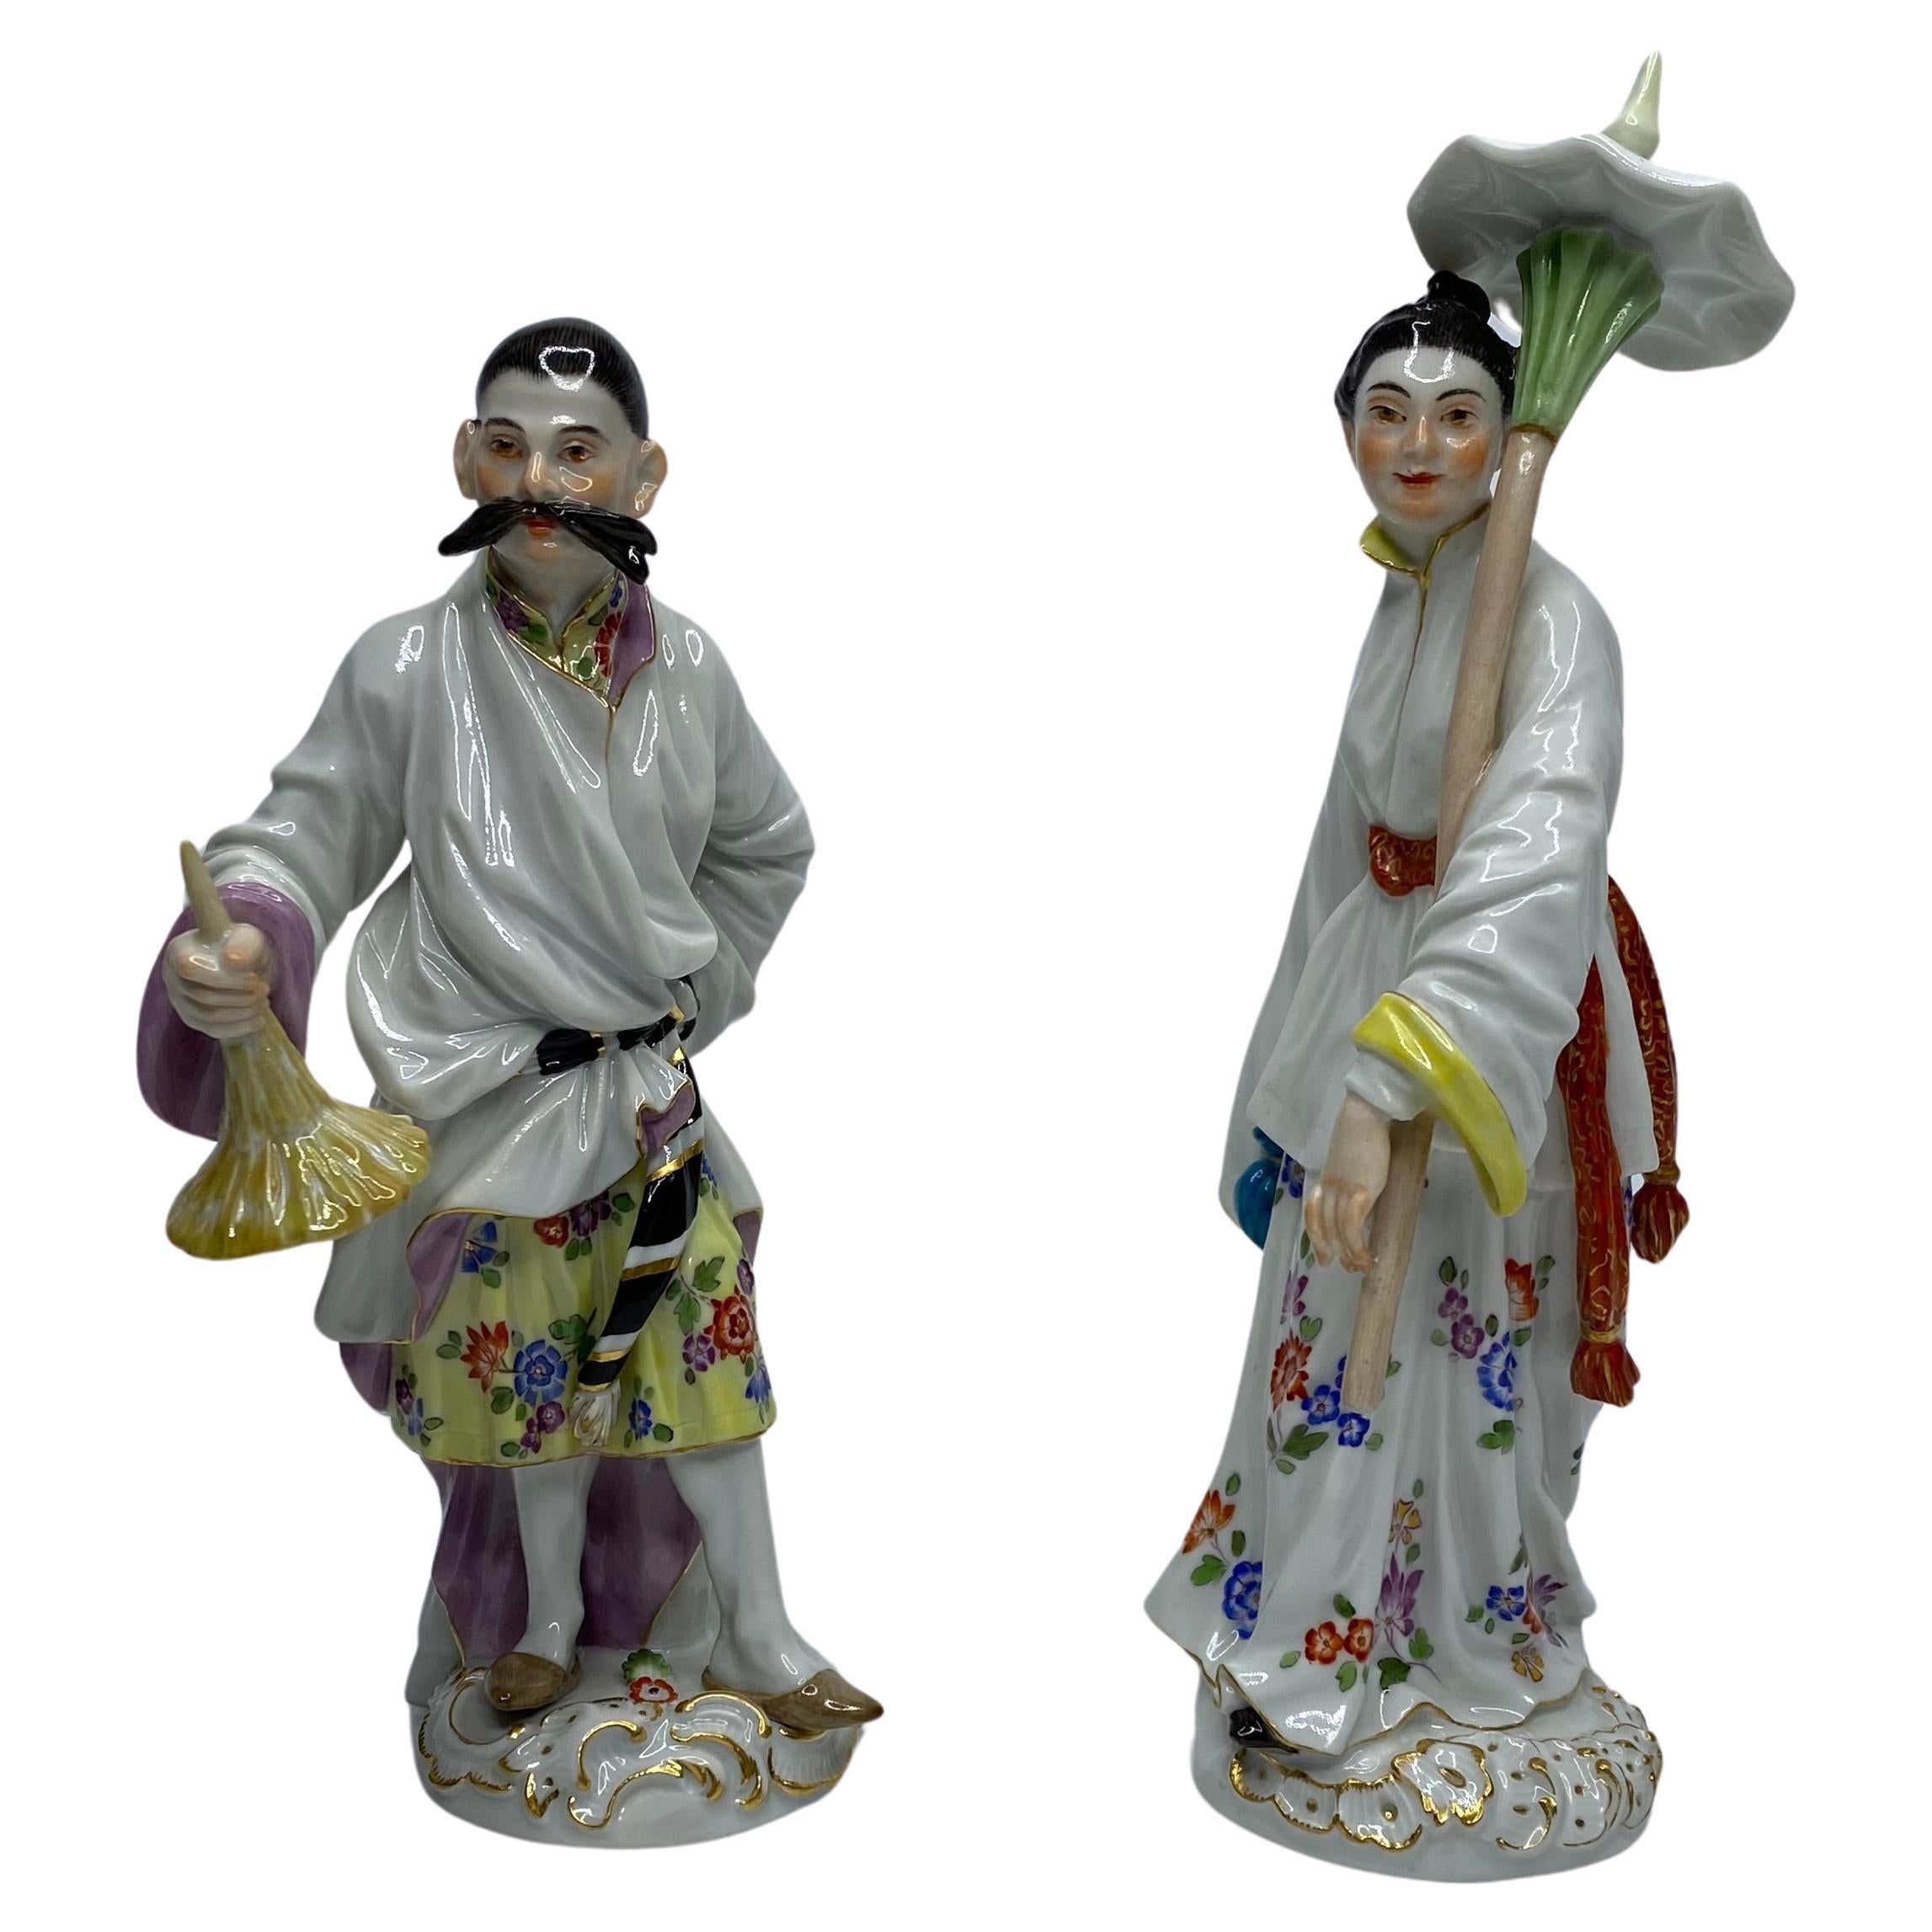 Figurines de Meissen "Couple japonais", c. 1920.